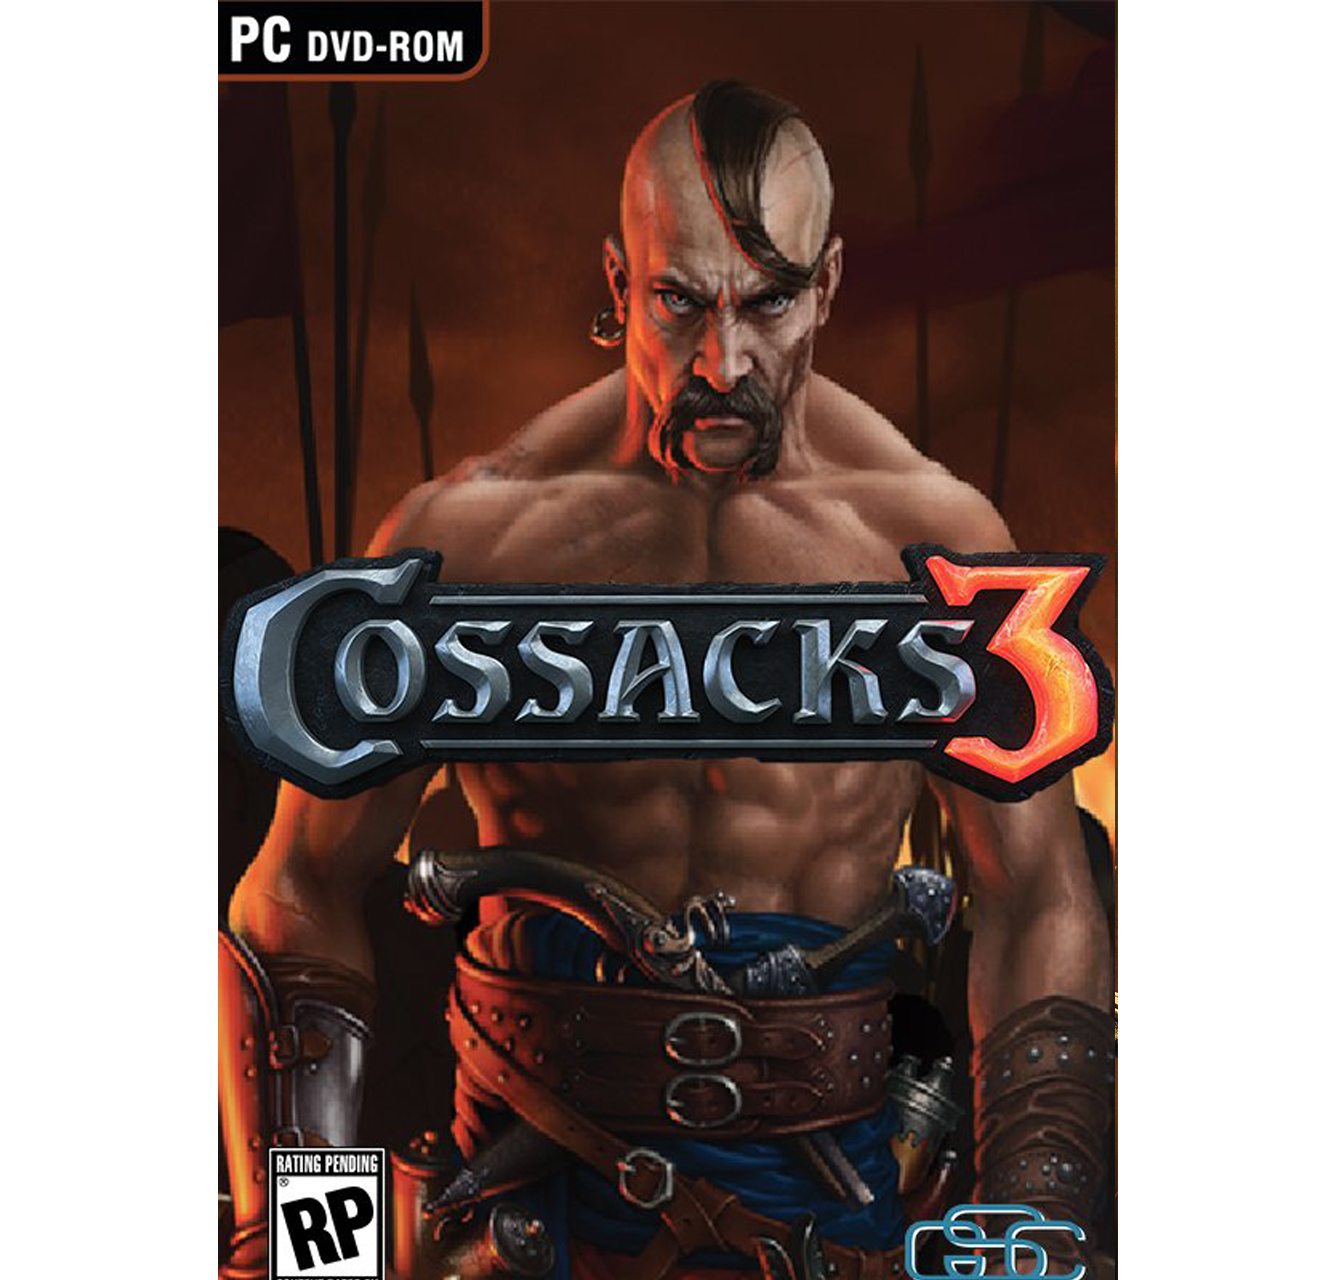 PC Cossacks 3 (Казаки 3) PC